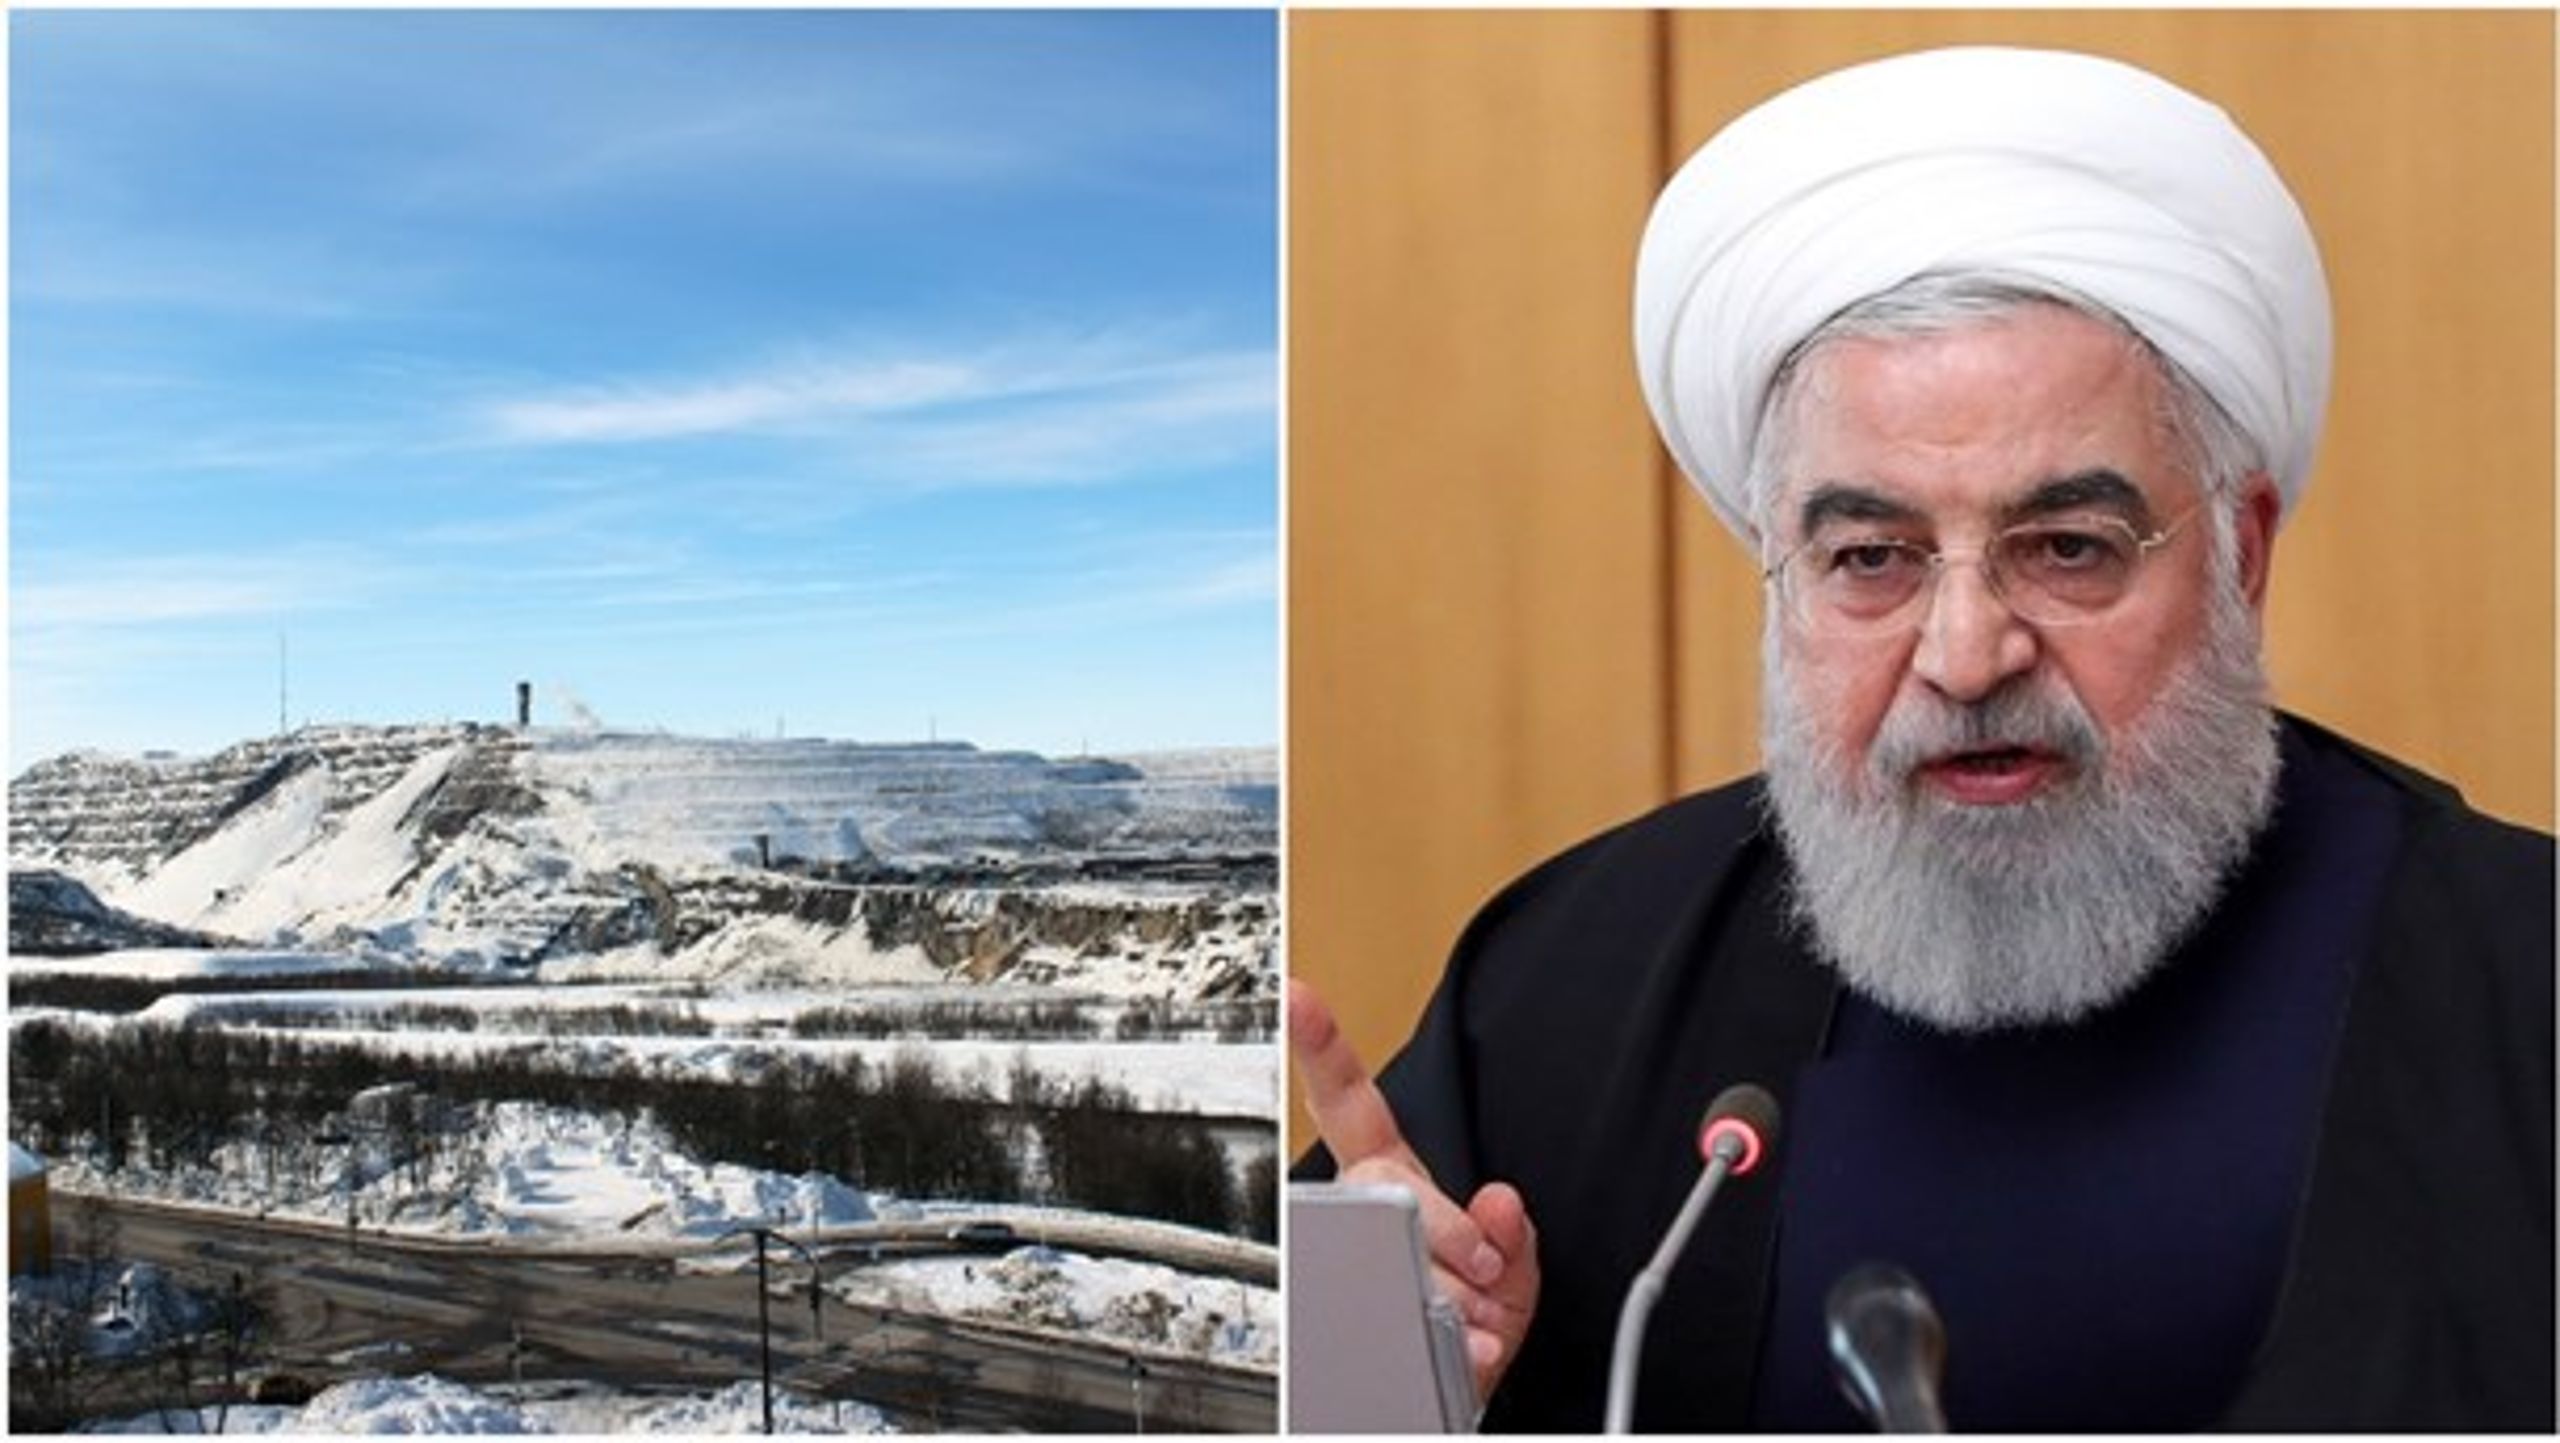 Storbråk mellan LKAB och Kiruna kommun. Löfven i samtal med Irans president Hassan Rouhani. Läs dagens politiska överblick.